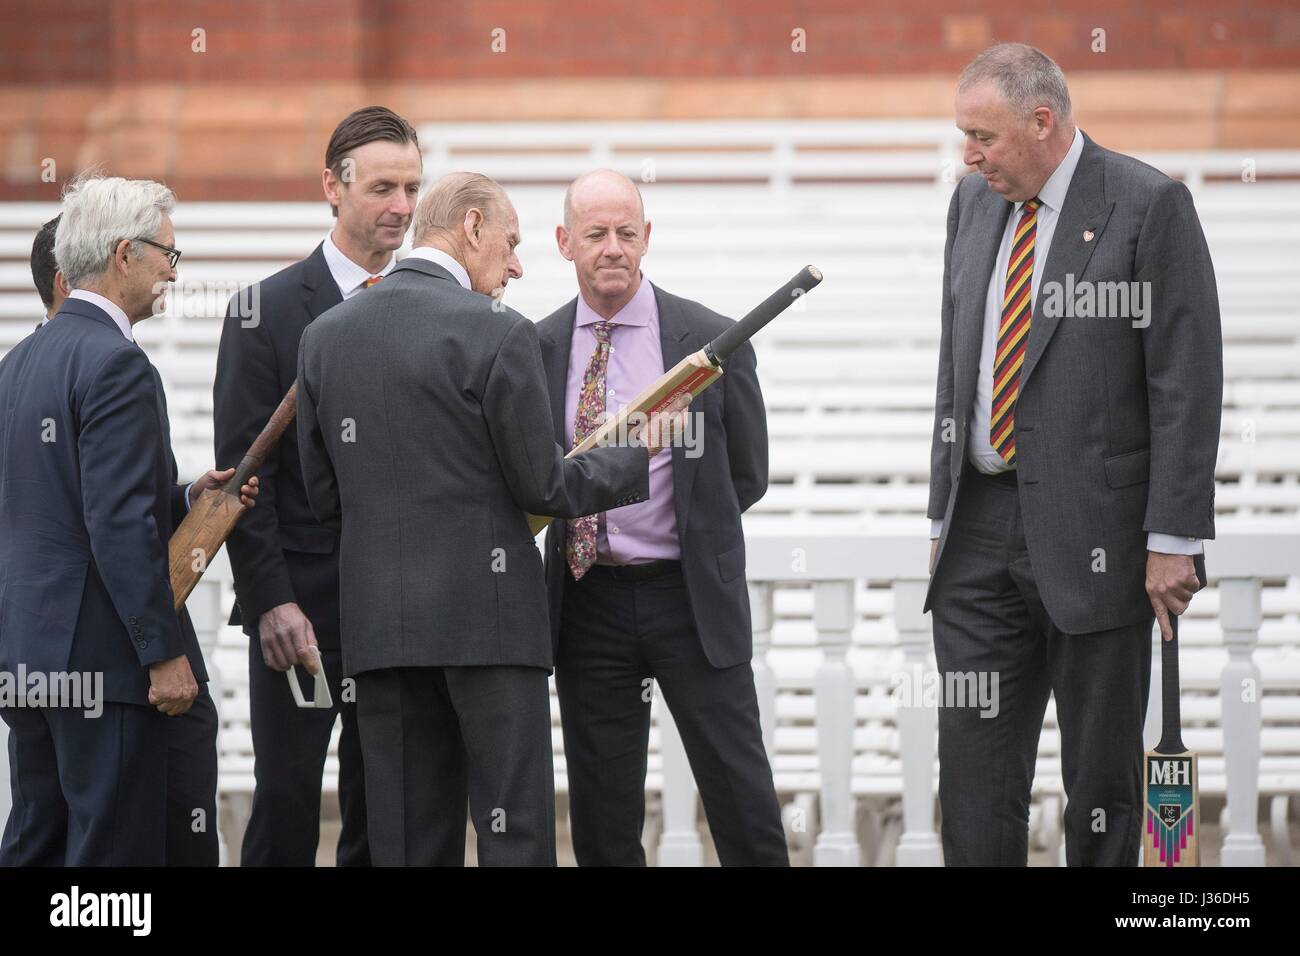 Le duc d'Édimbourg (troisième à droite) apparaît un certain nombre de chauves-souris par Simon Hughes journaliste cricket (deuxième à droite), et l'ancien joueur de cricket Angleterre Angus Fraser (à droite), lors d'une visite à Lord's Cricket Ground à Londres, où il a ouvert le site sportif de neuf stand Warner. Banque D'Images